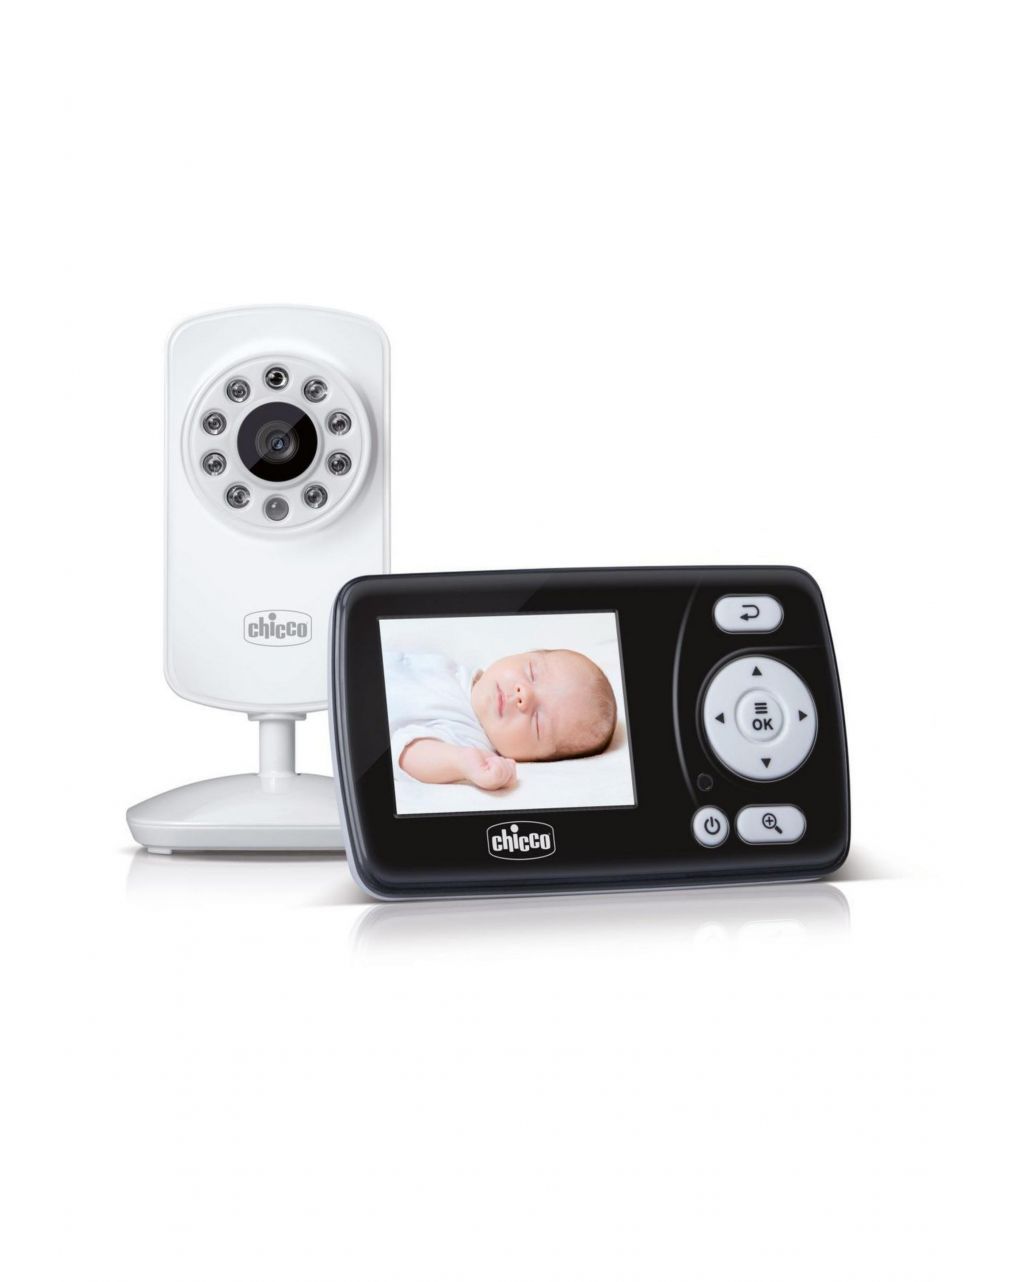 Monitor de bebê de vídeo smart 2,4 " - Chicco